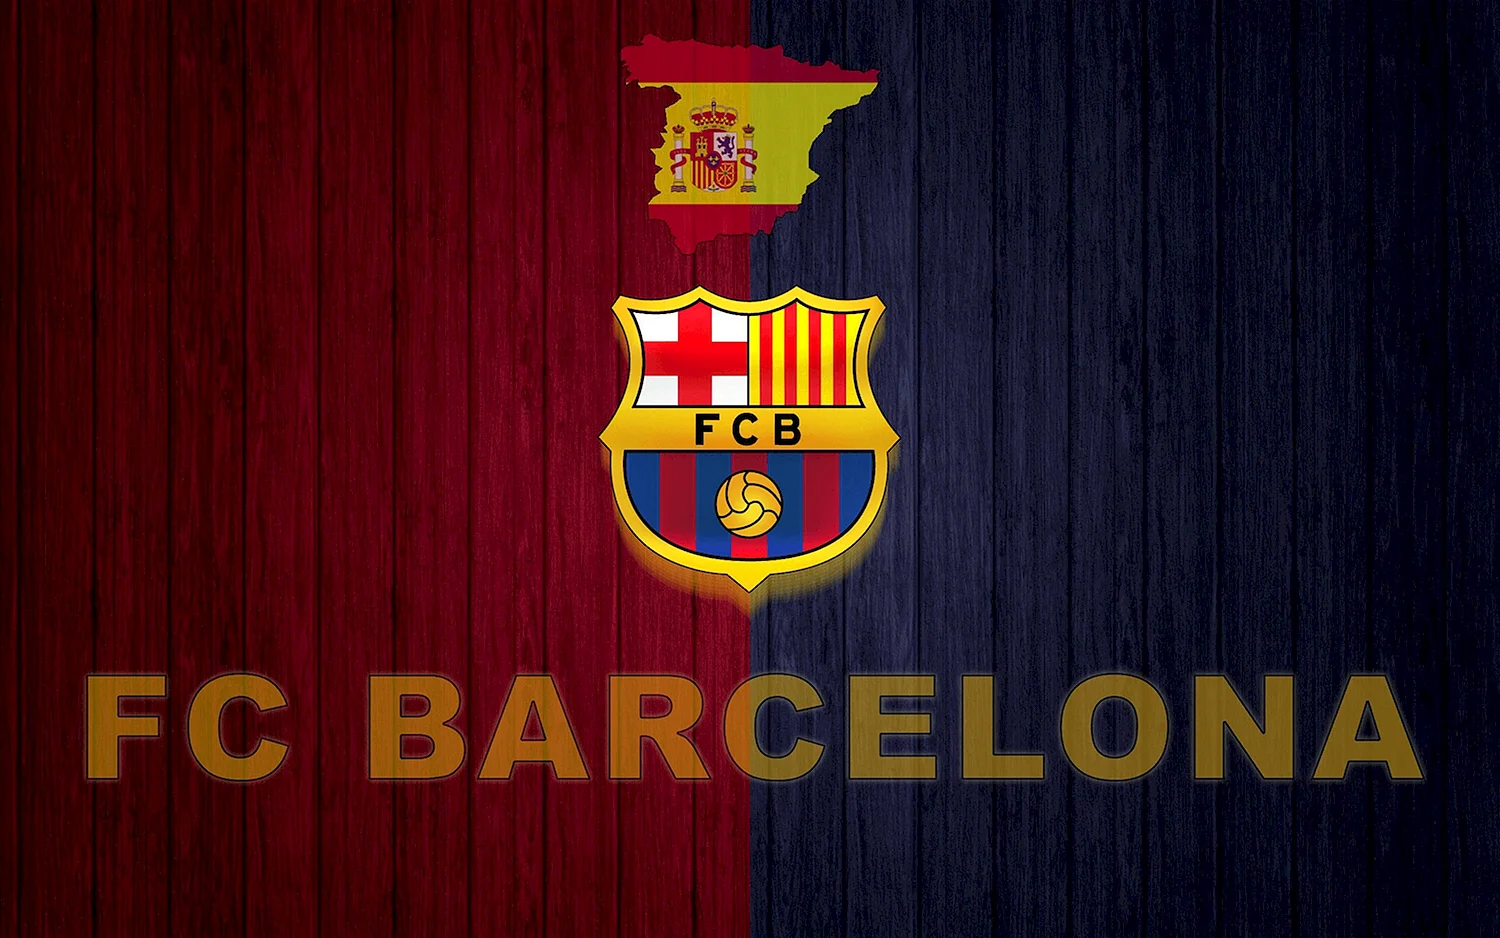 Барселона футбольный клуб лого